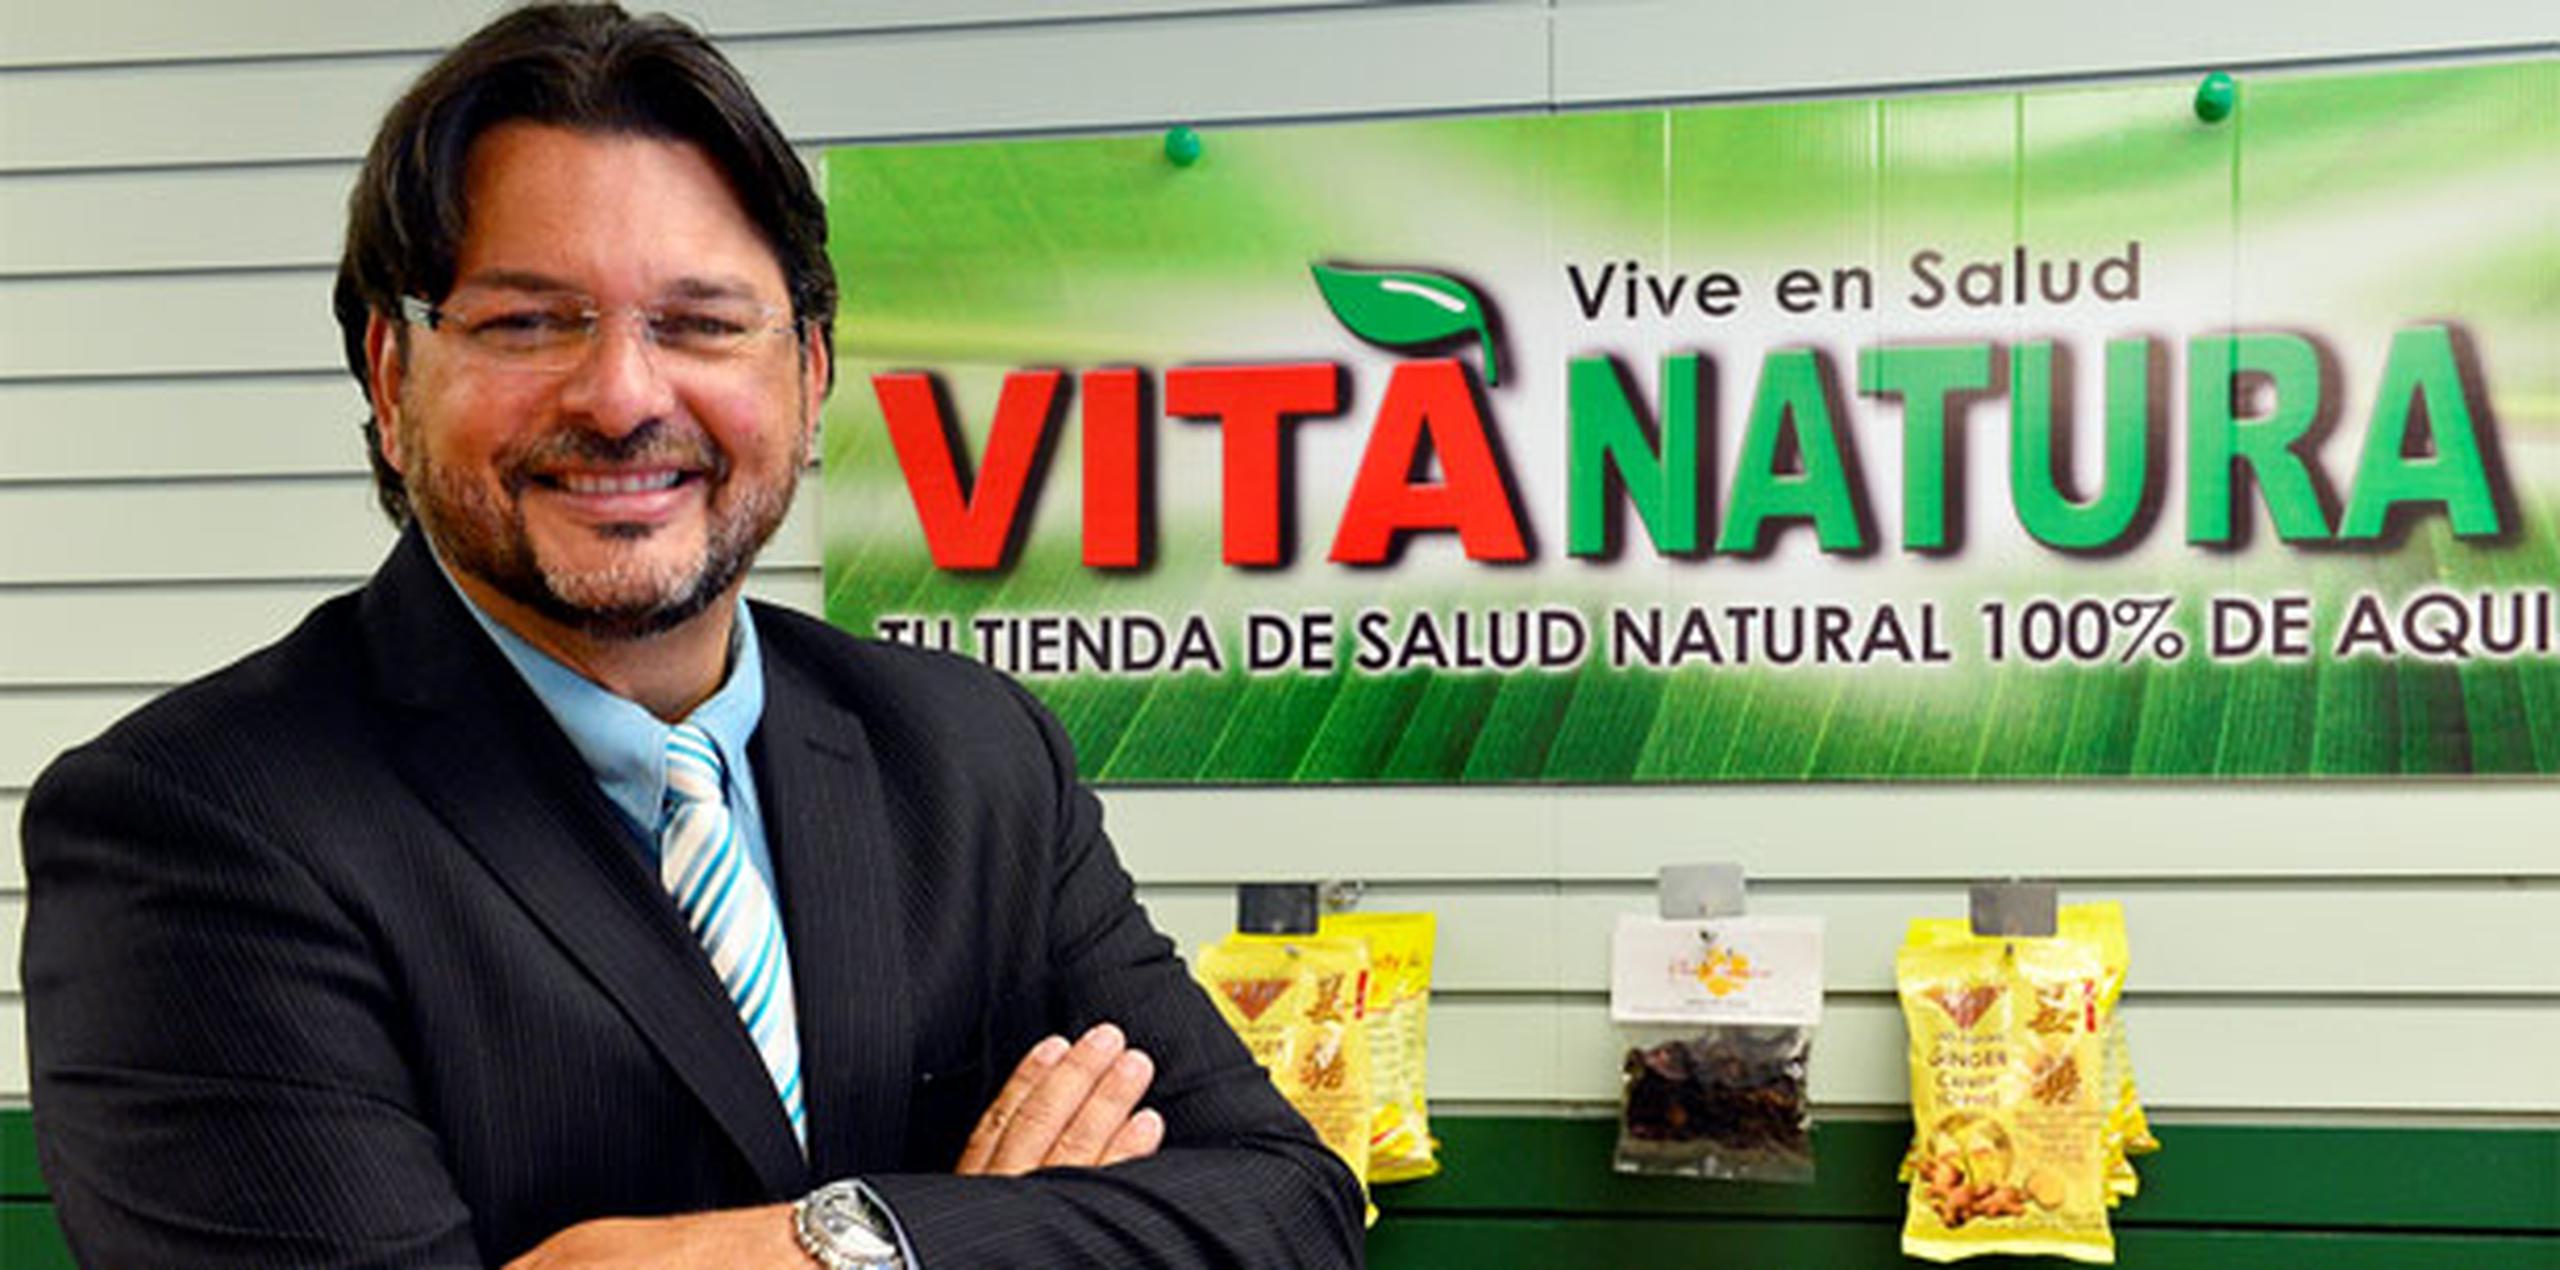 De acuerdo con el reporte de Hacienda, la tienda de suplementos vitamínicos debe unos $257,753, de los que $254,829 corresponden al IVU. En la foto, Frank Medina. (Archivo)